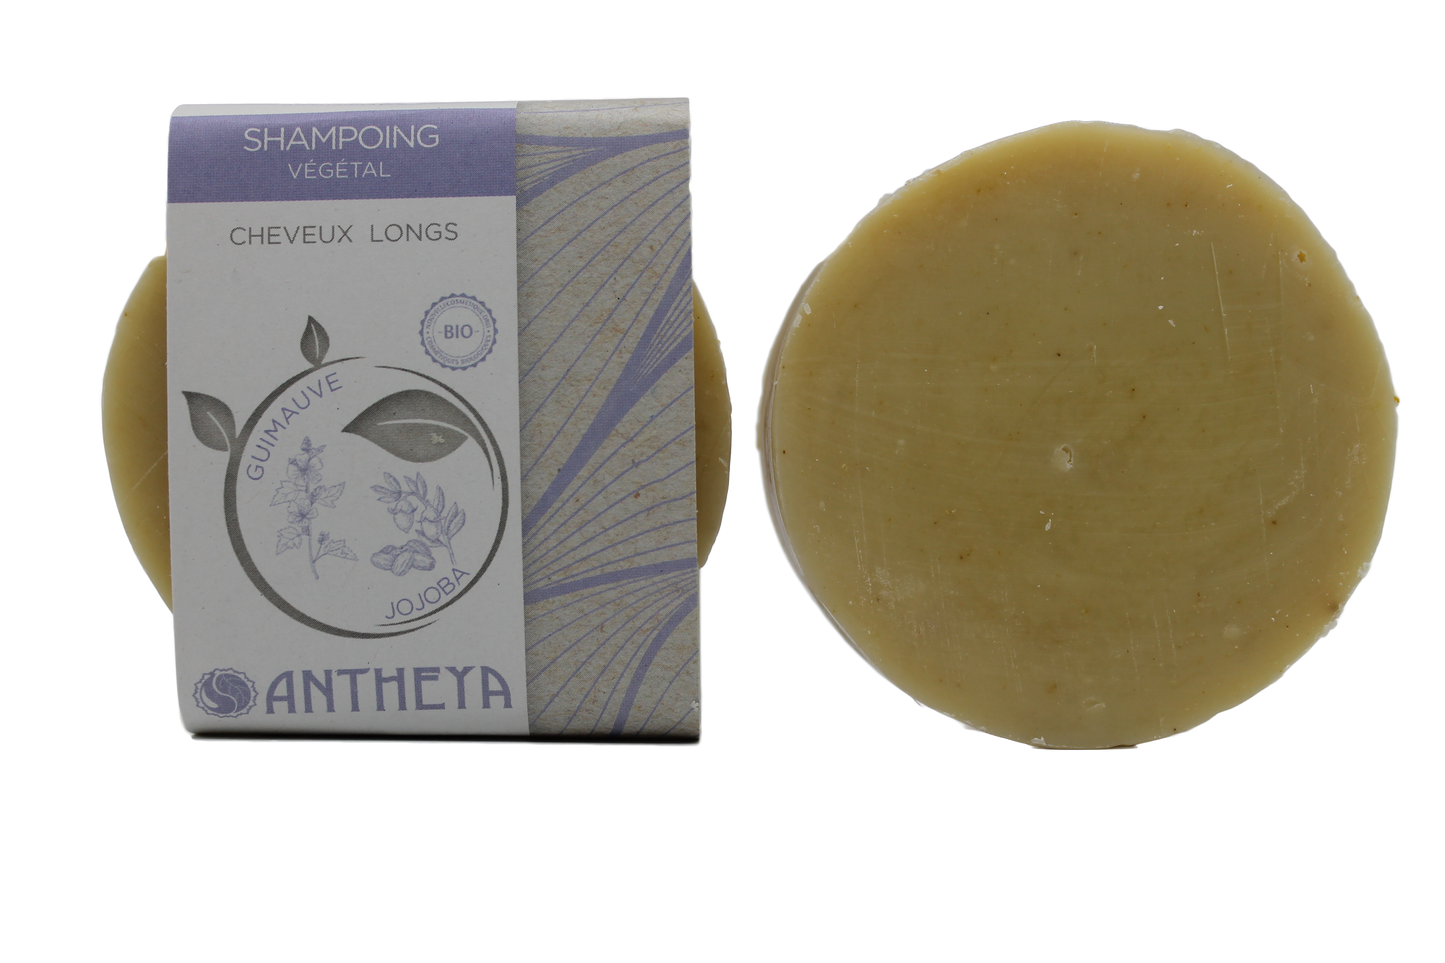 Antheya -- Shampoing solide guimauve - cheveux longs ou frisés (bande papier) - 90 g